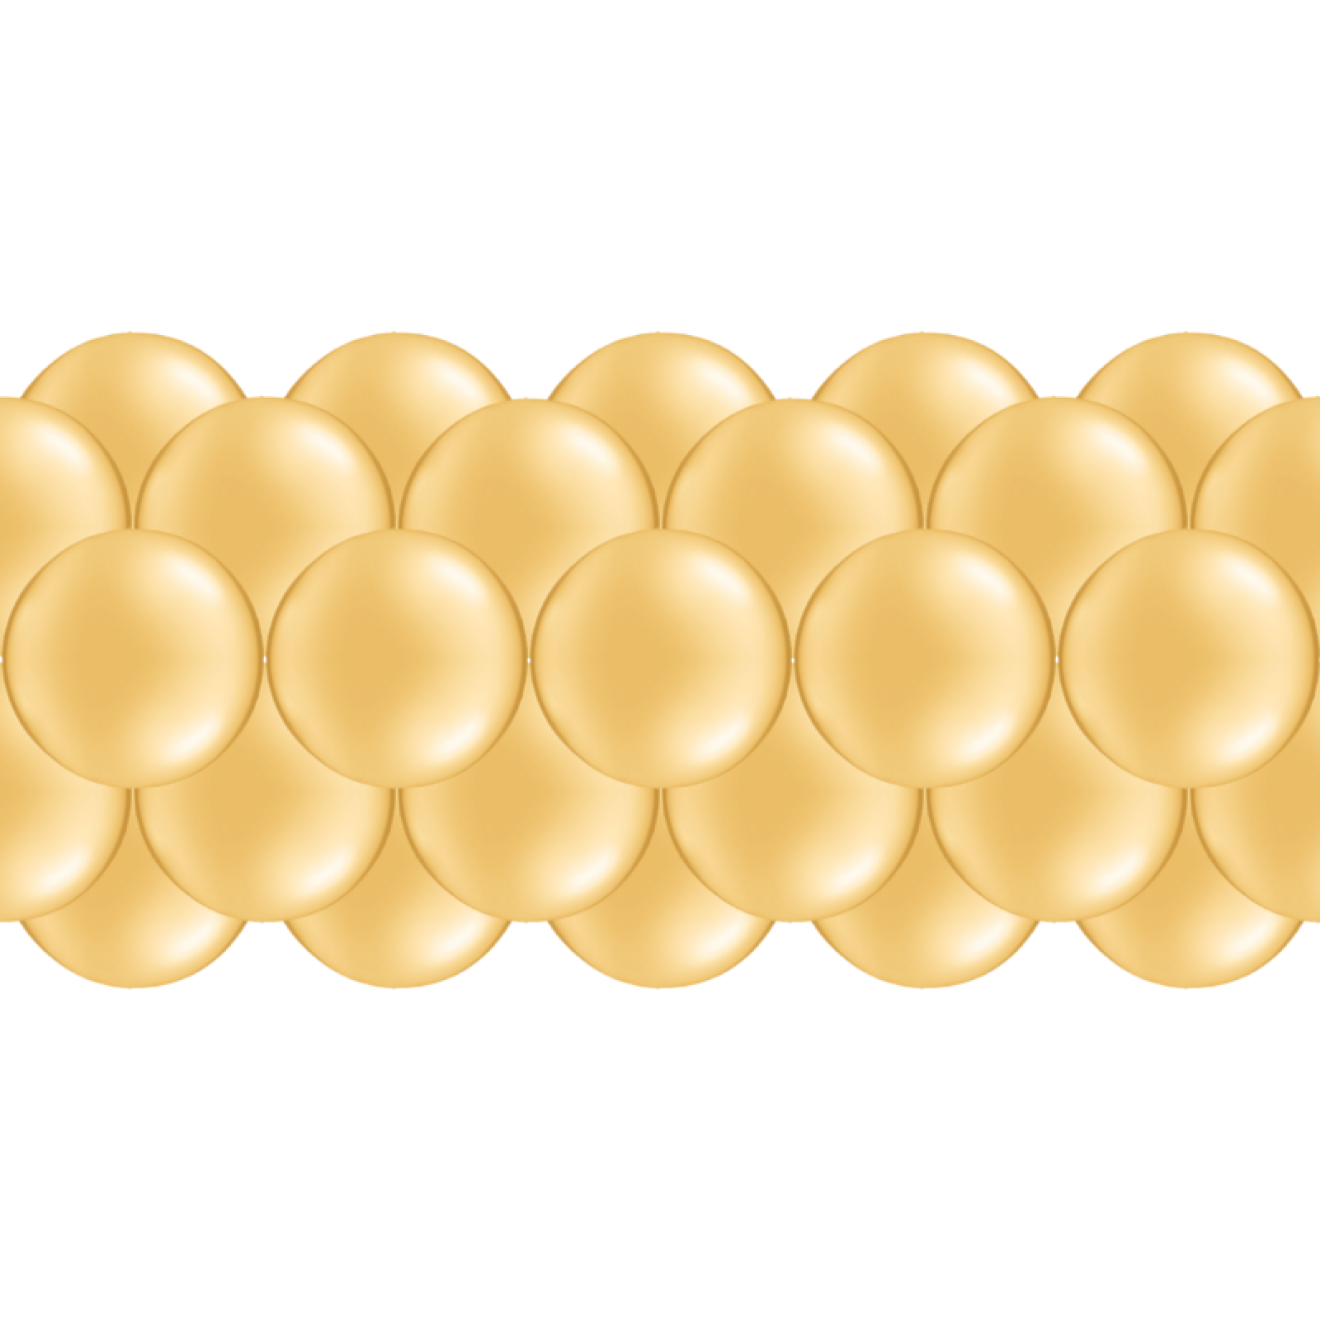 Luftballongirlanden-Set Gold (Metallic / Glänzend) ab 3 m